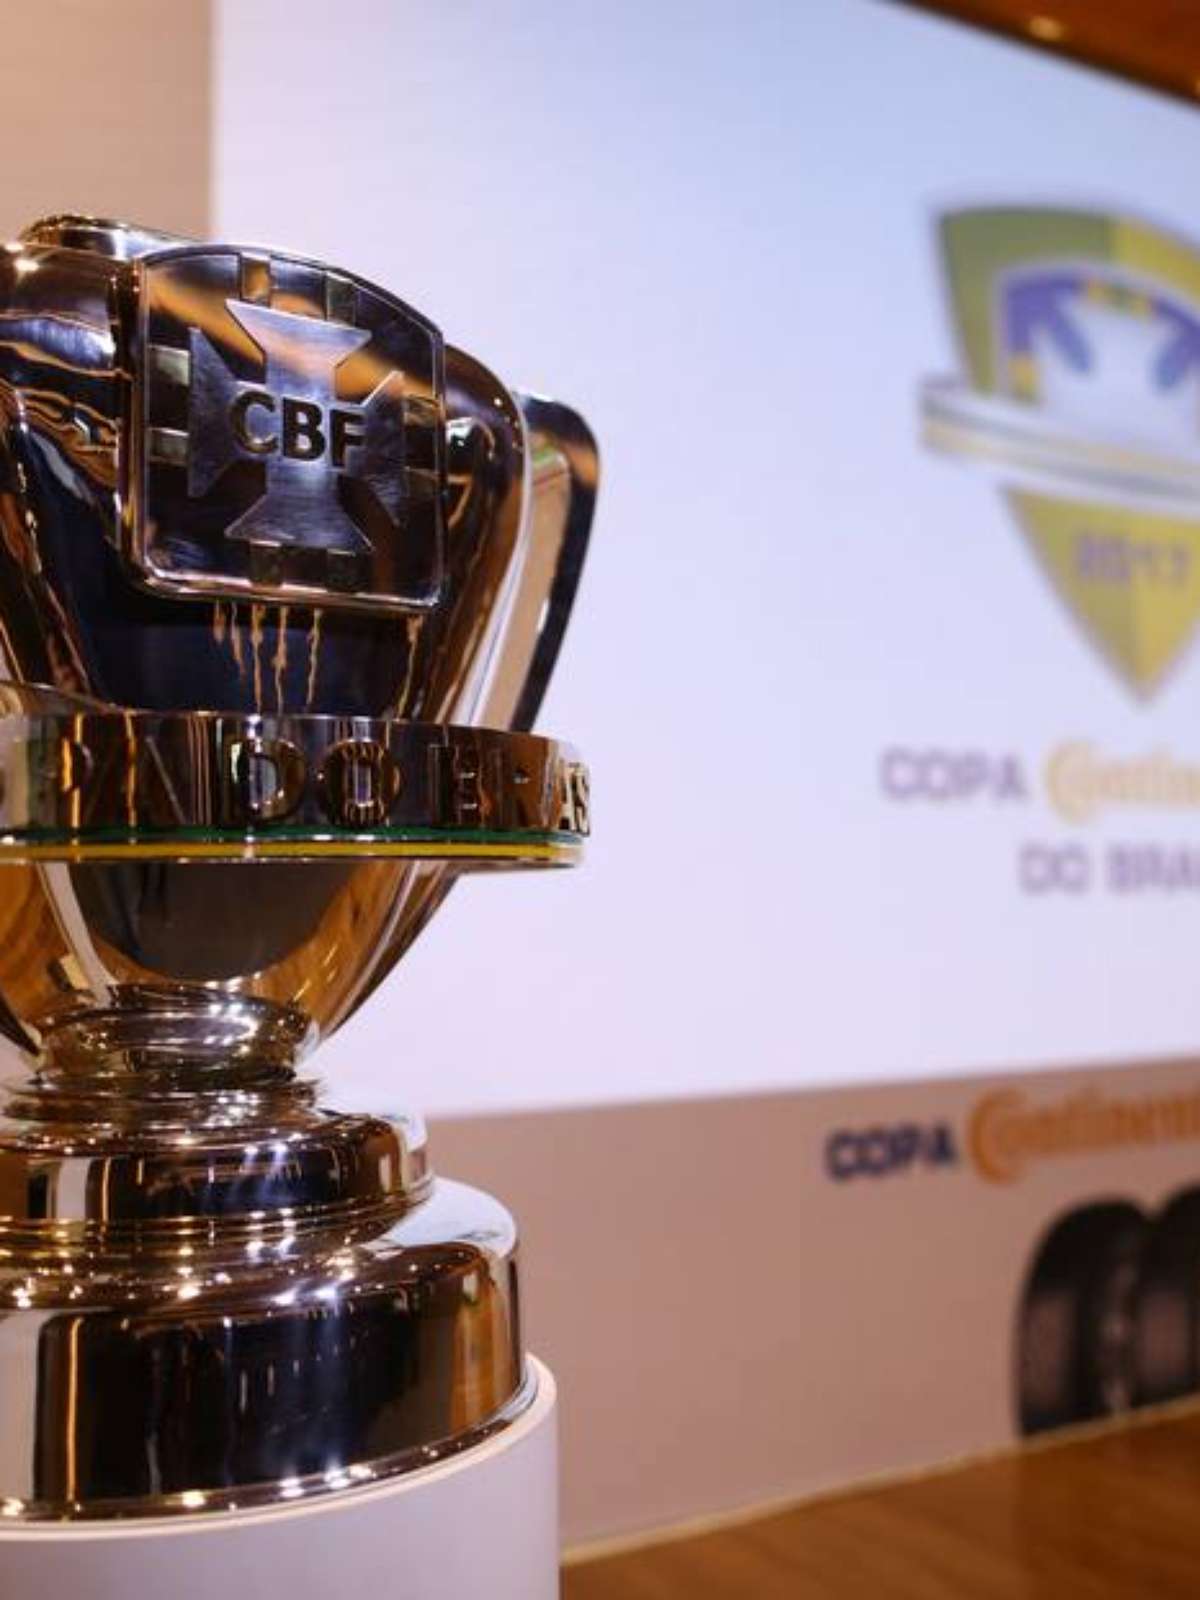 São Paulo - SP 9 x 1 4 de Julho - PI - Copa do Brasil de Futebol 2021 -  Confederação Brasileira de Futebol